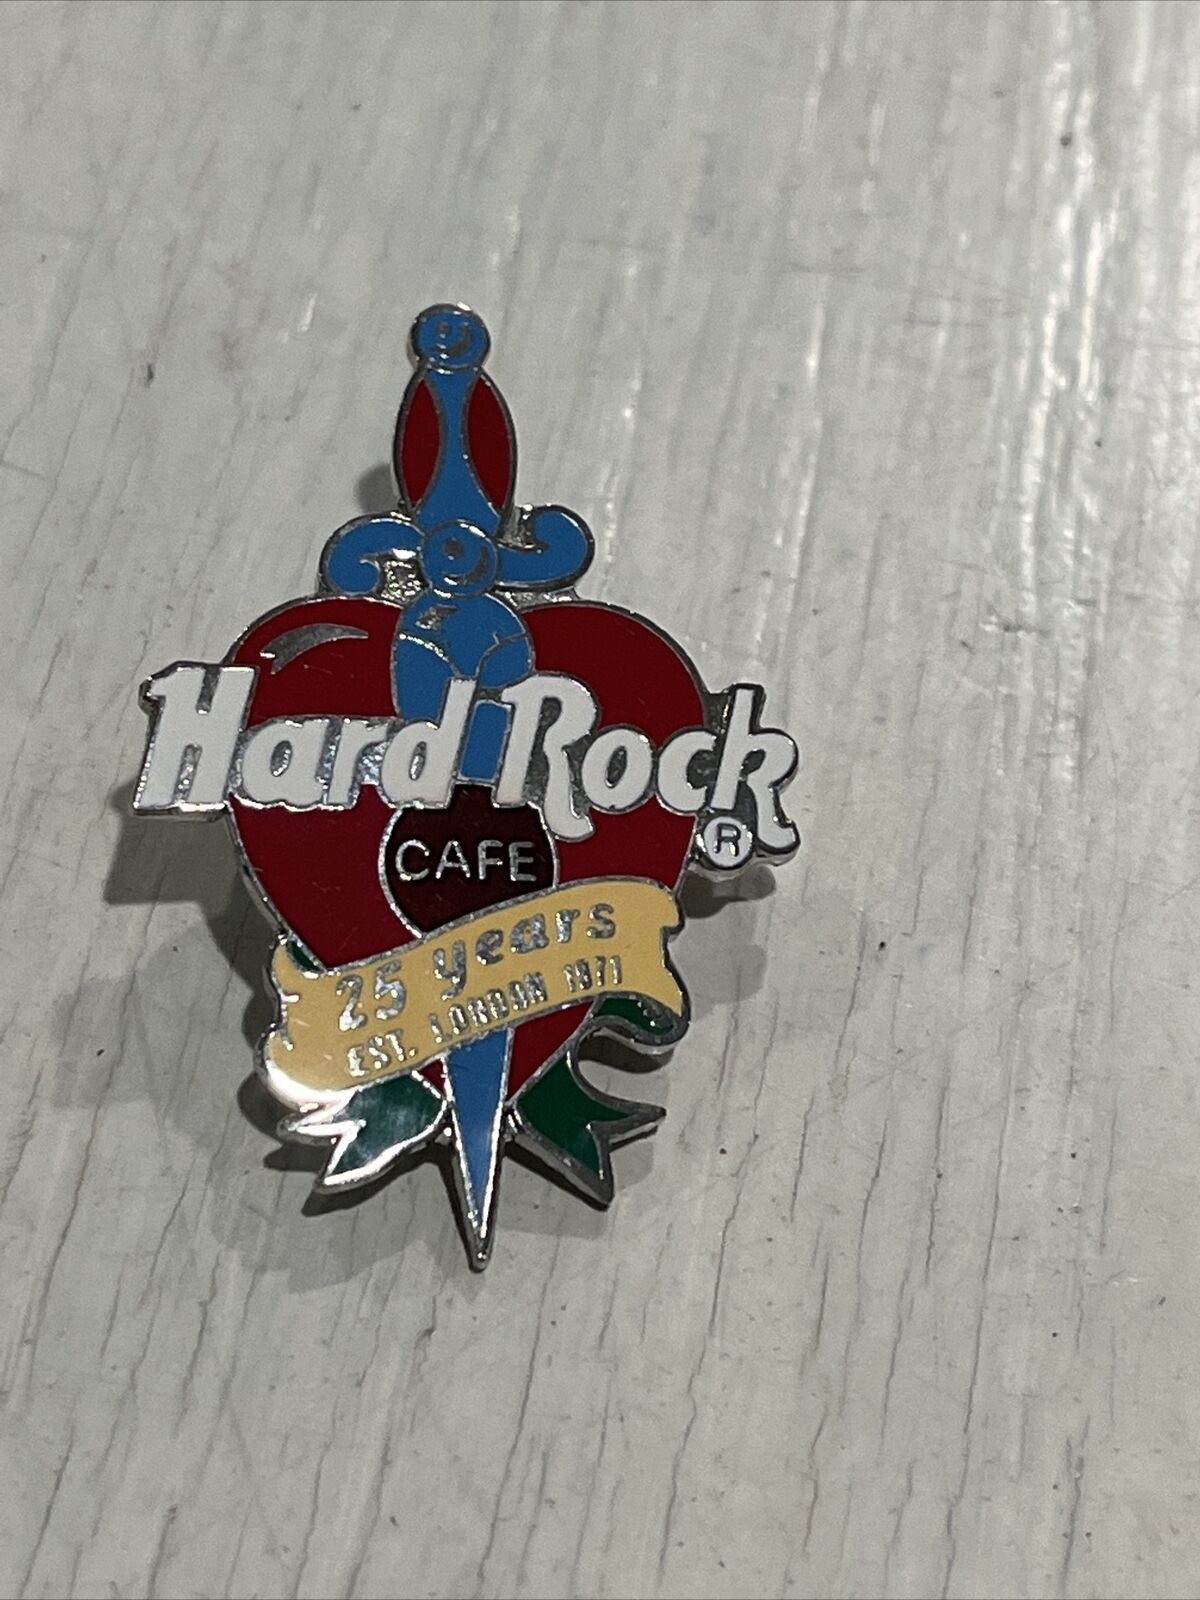 Hard Rock Cafe 25 Years Established London 1971 Pin